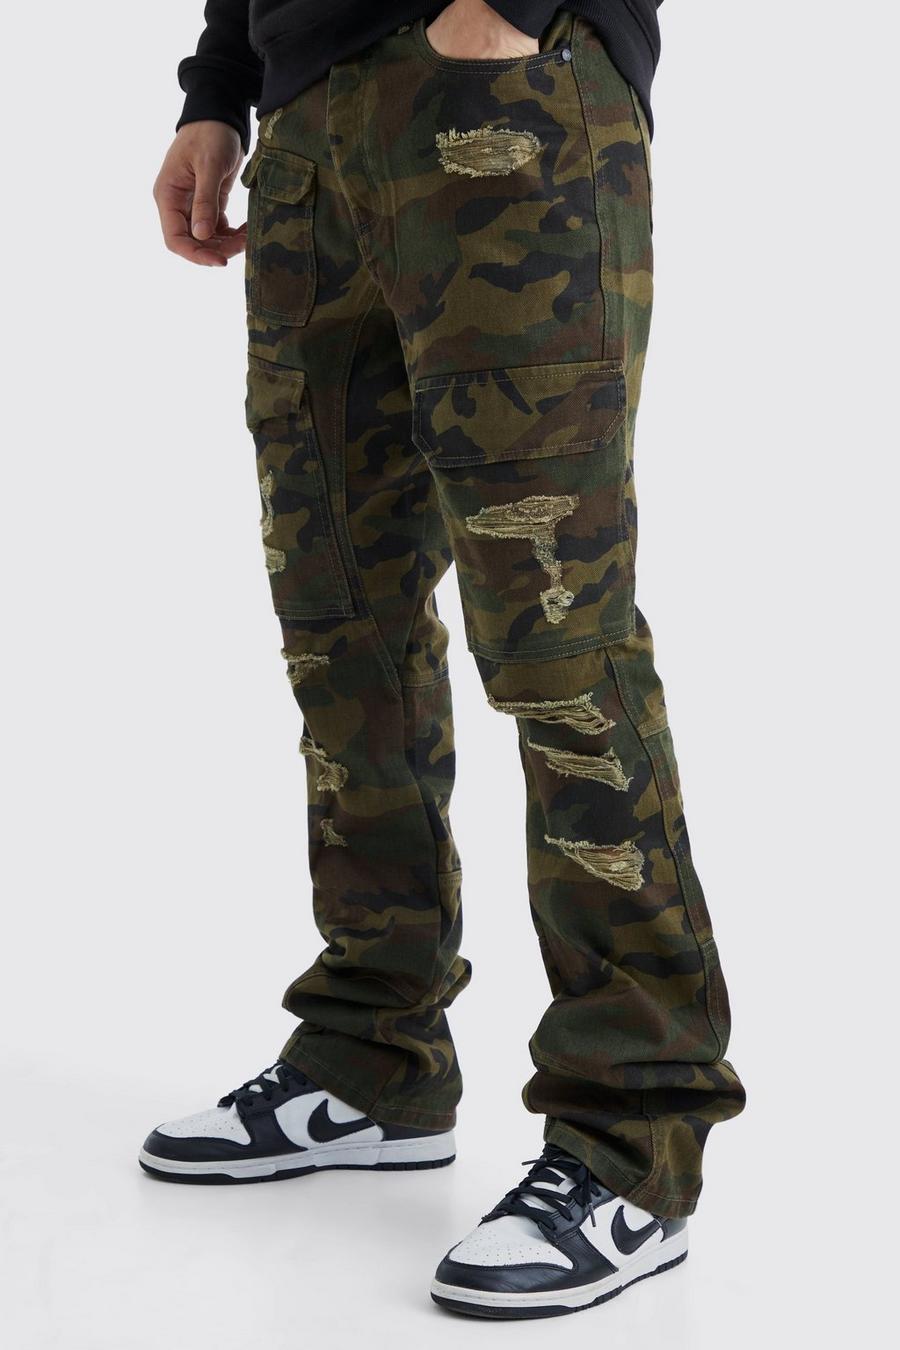 Jeans Cargo Tall Slim Fit in denim rigido in fantasia militare con rattoppi, Khaki image number 1